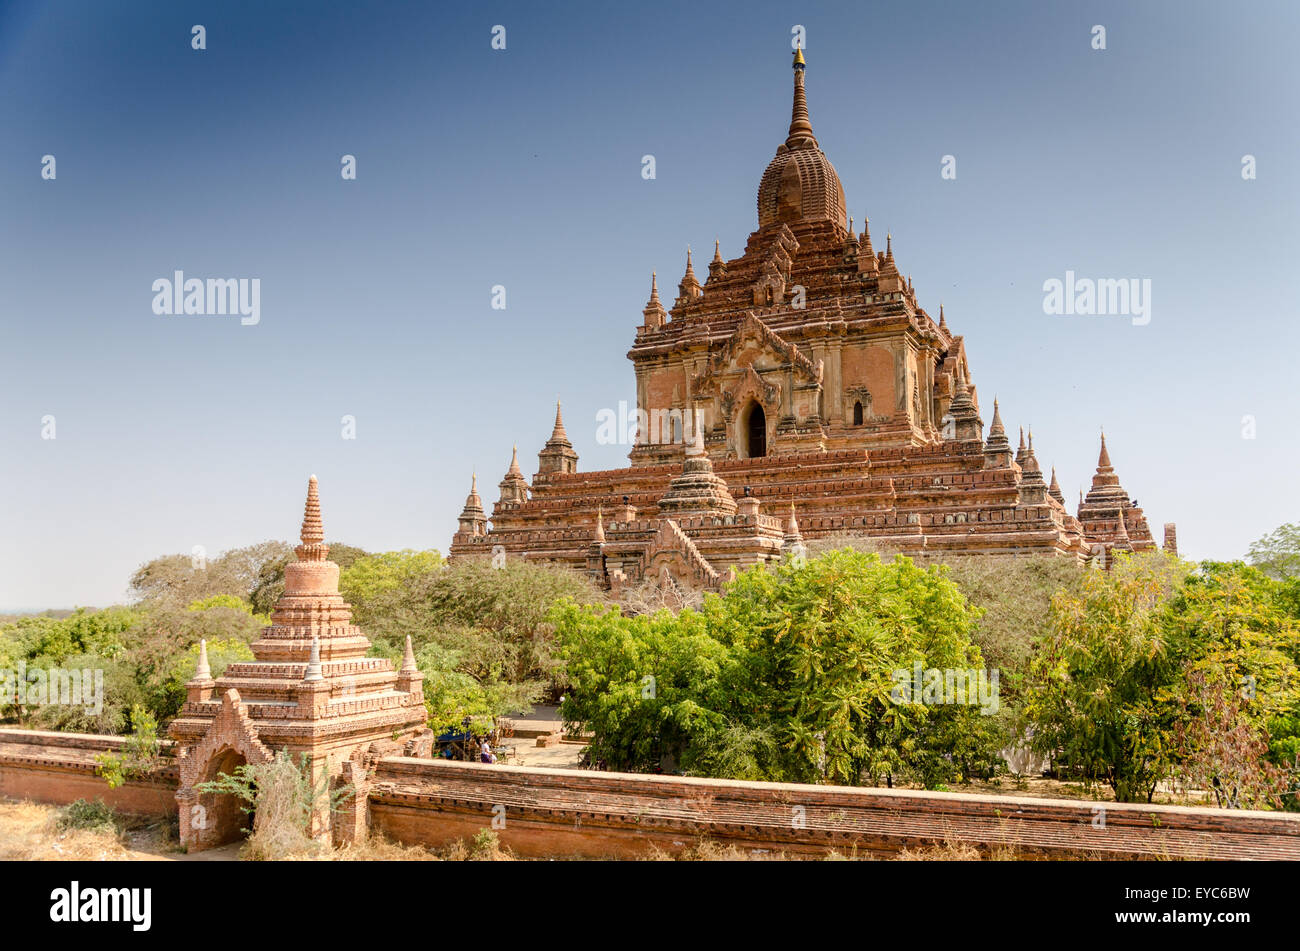 Ananda-Tempel, Bagan, Myanmar Stockfotografie - Alamy